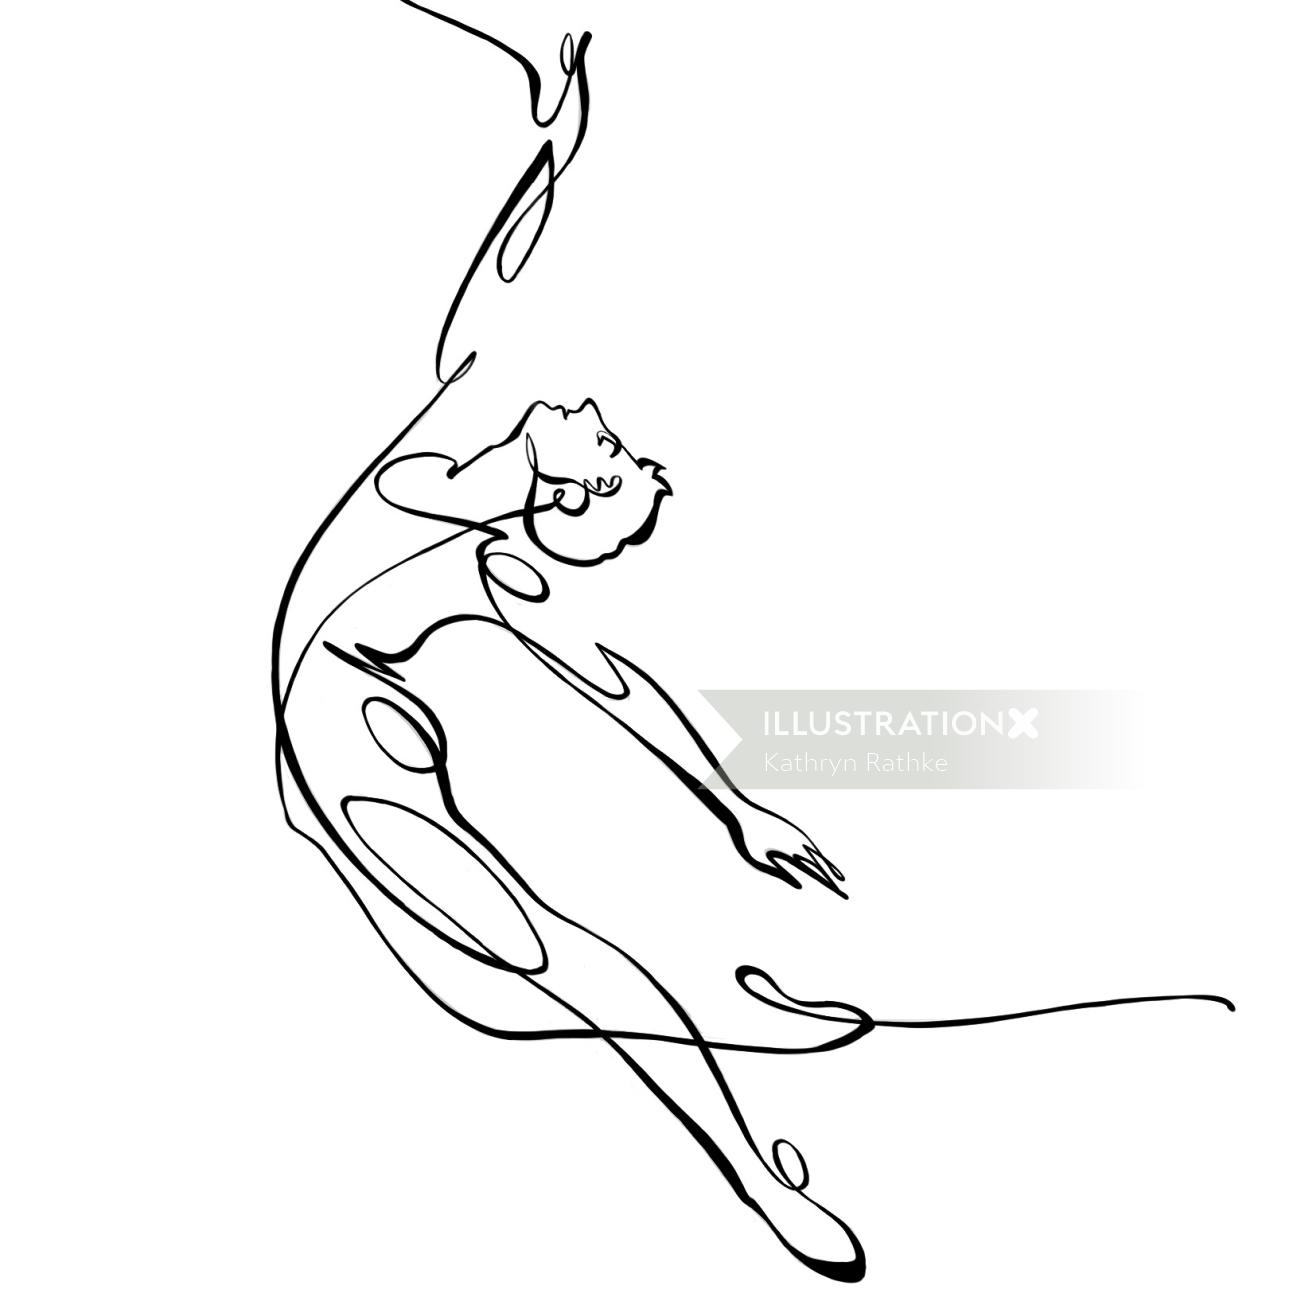 芭蕾舞者单线画GIF动画